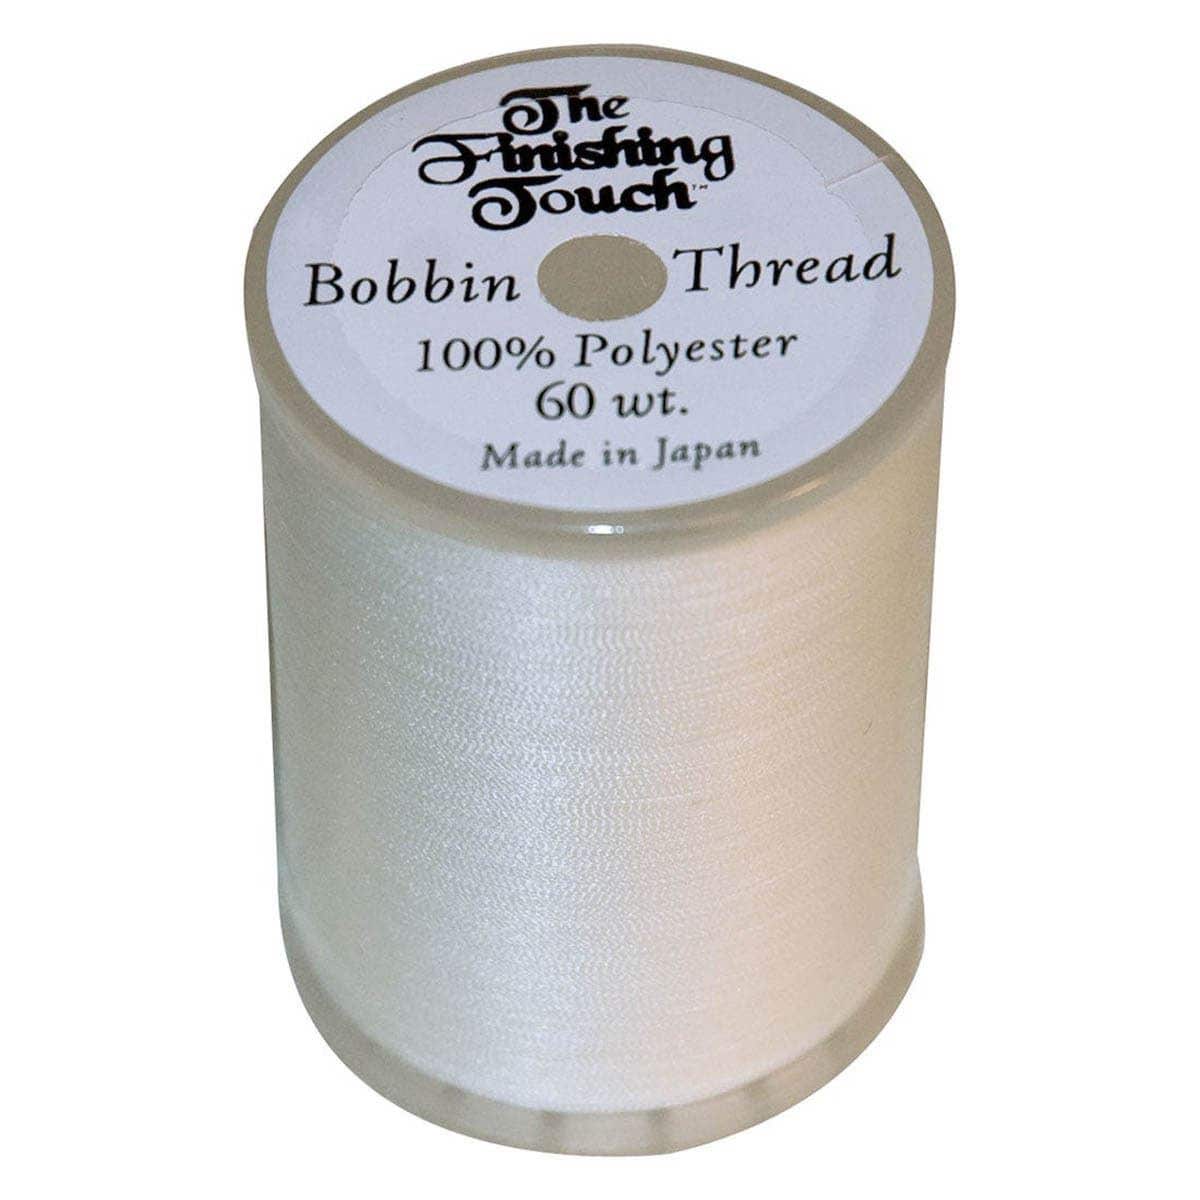  60 Pcs/Colors Prewound Embroidery Bobbins Thread Embroidery  Machine Thread Kit. 40 Wt Size A Threads bobbins for Embroidery  Machine:Brother/Babylock/Janome/Singer/Pfaff/ Bernina/Elna : Arts, Crafts &  Sewing